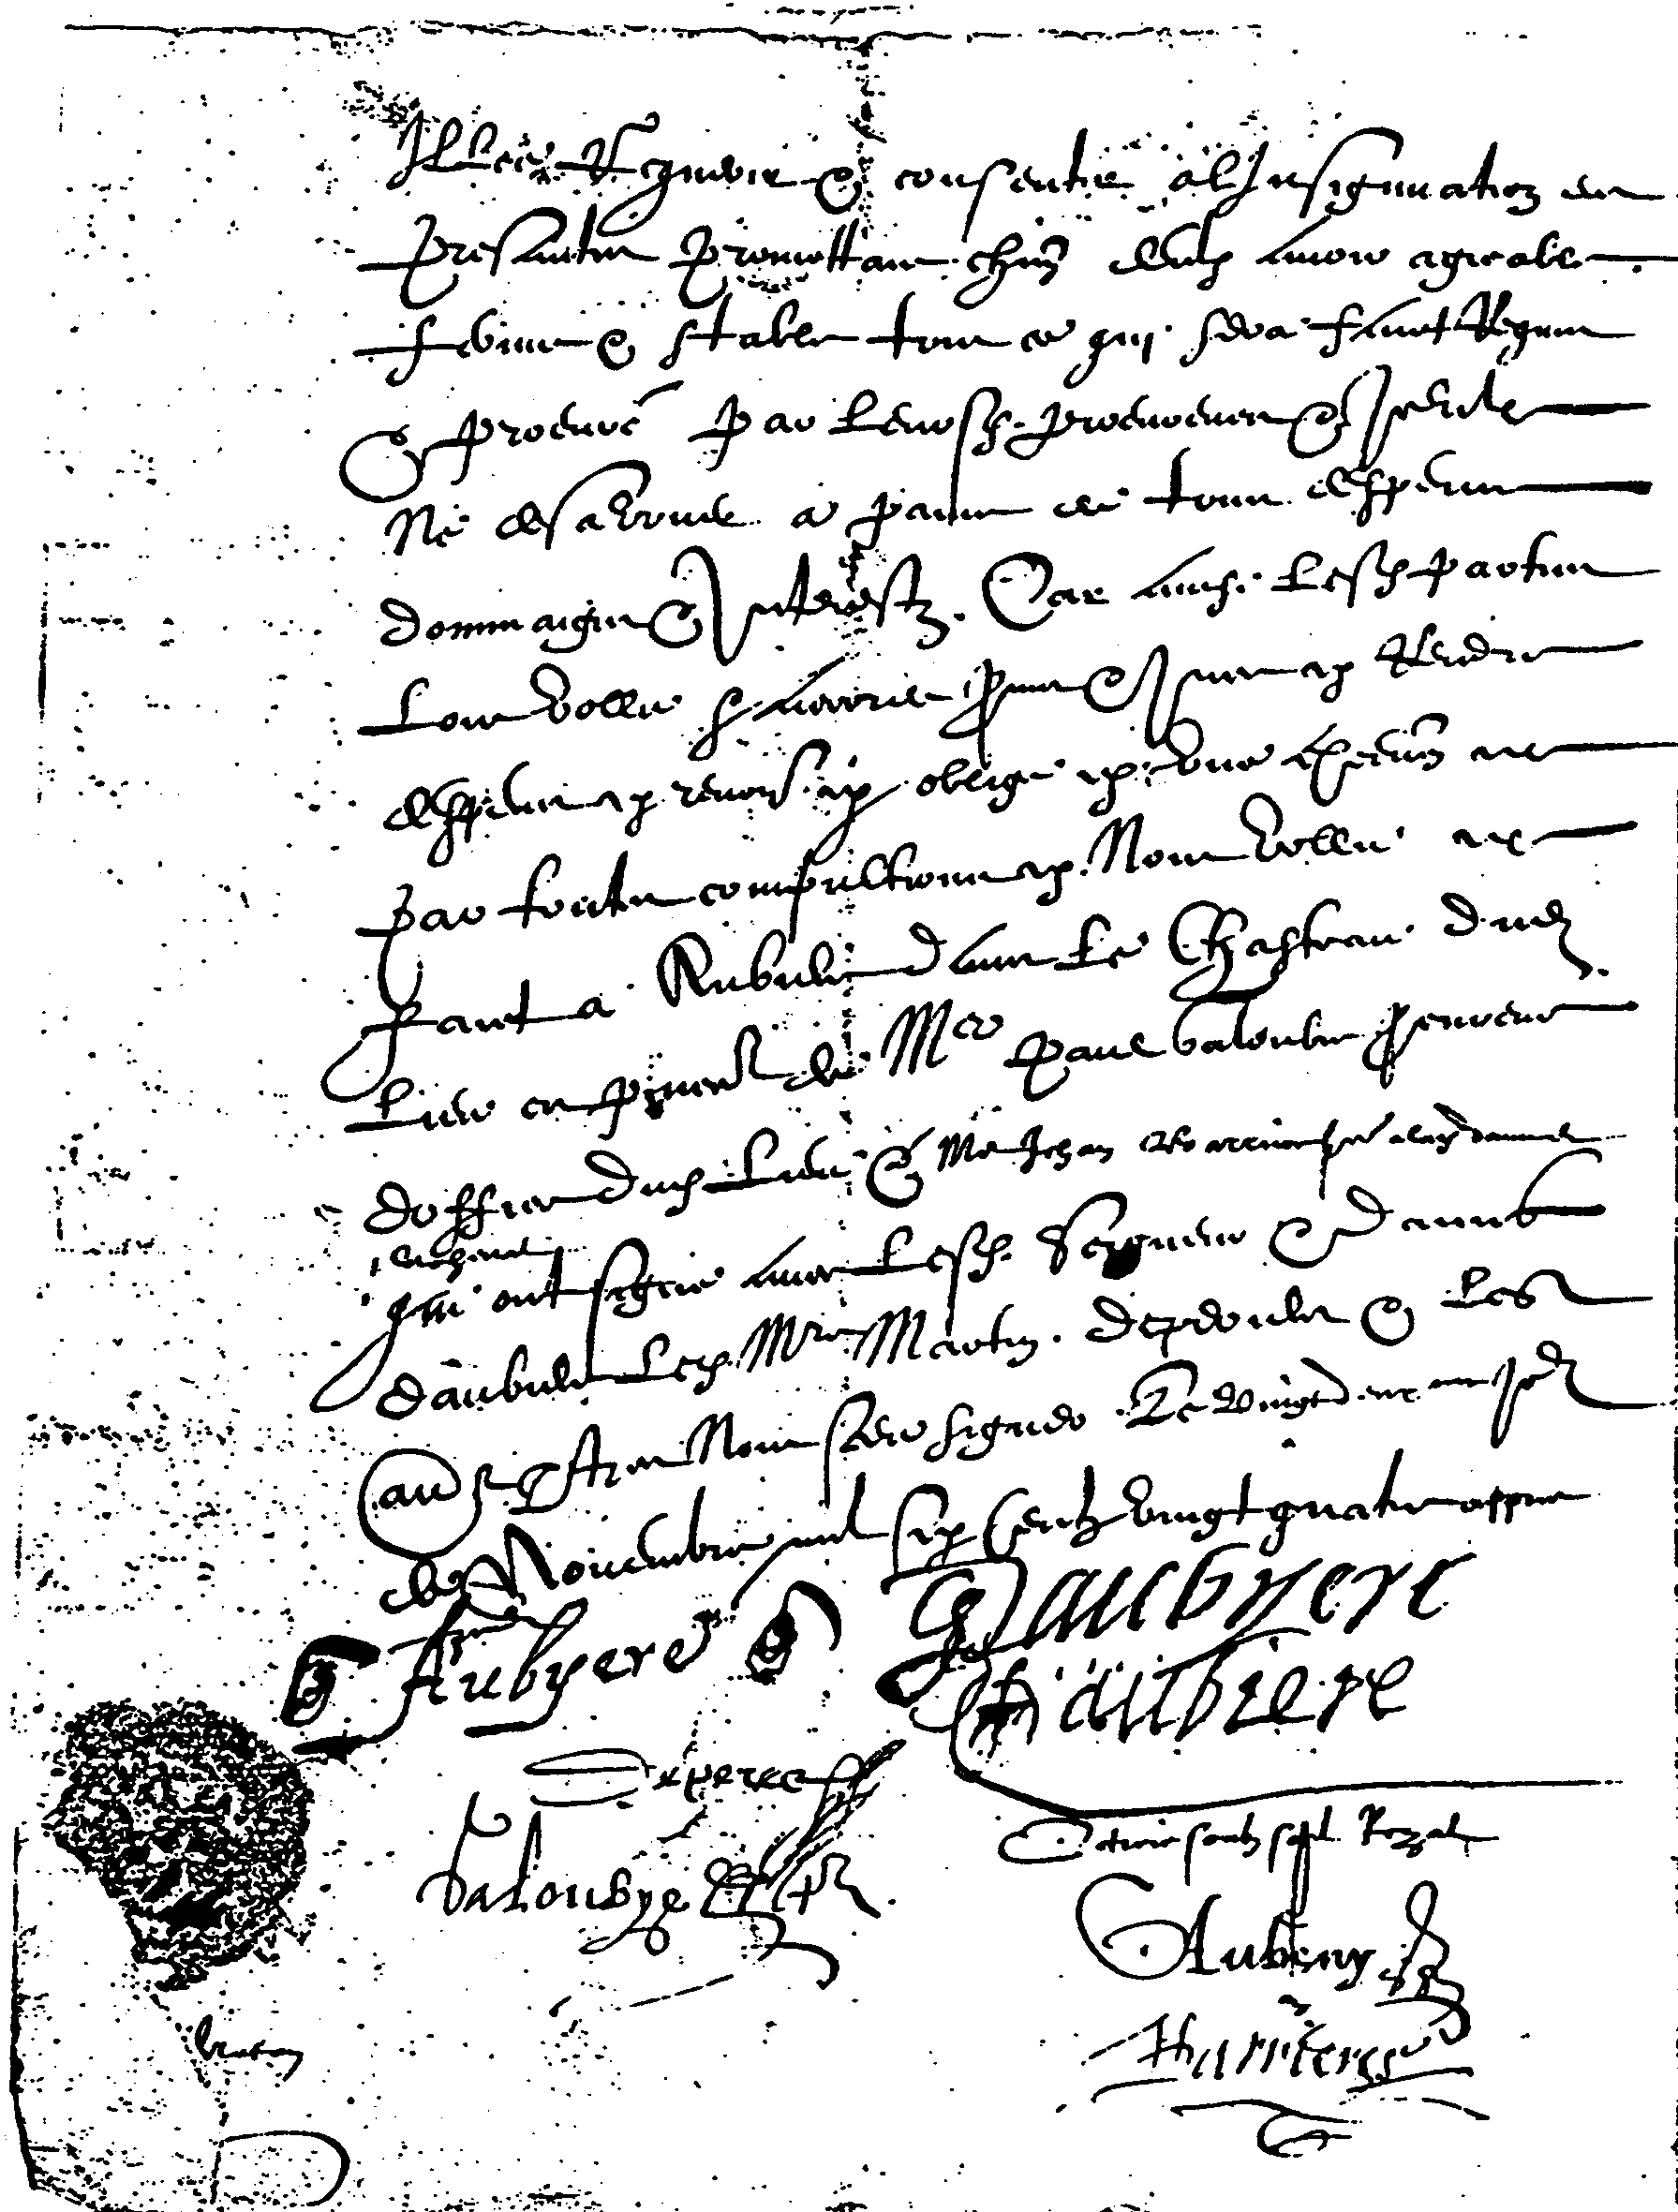 Dernière page du contrat de mariage entre Isabeau d'Aubière et Michel Depereir, avec les signatures des contractants